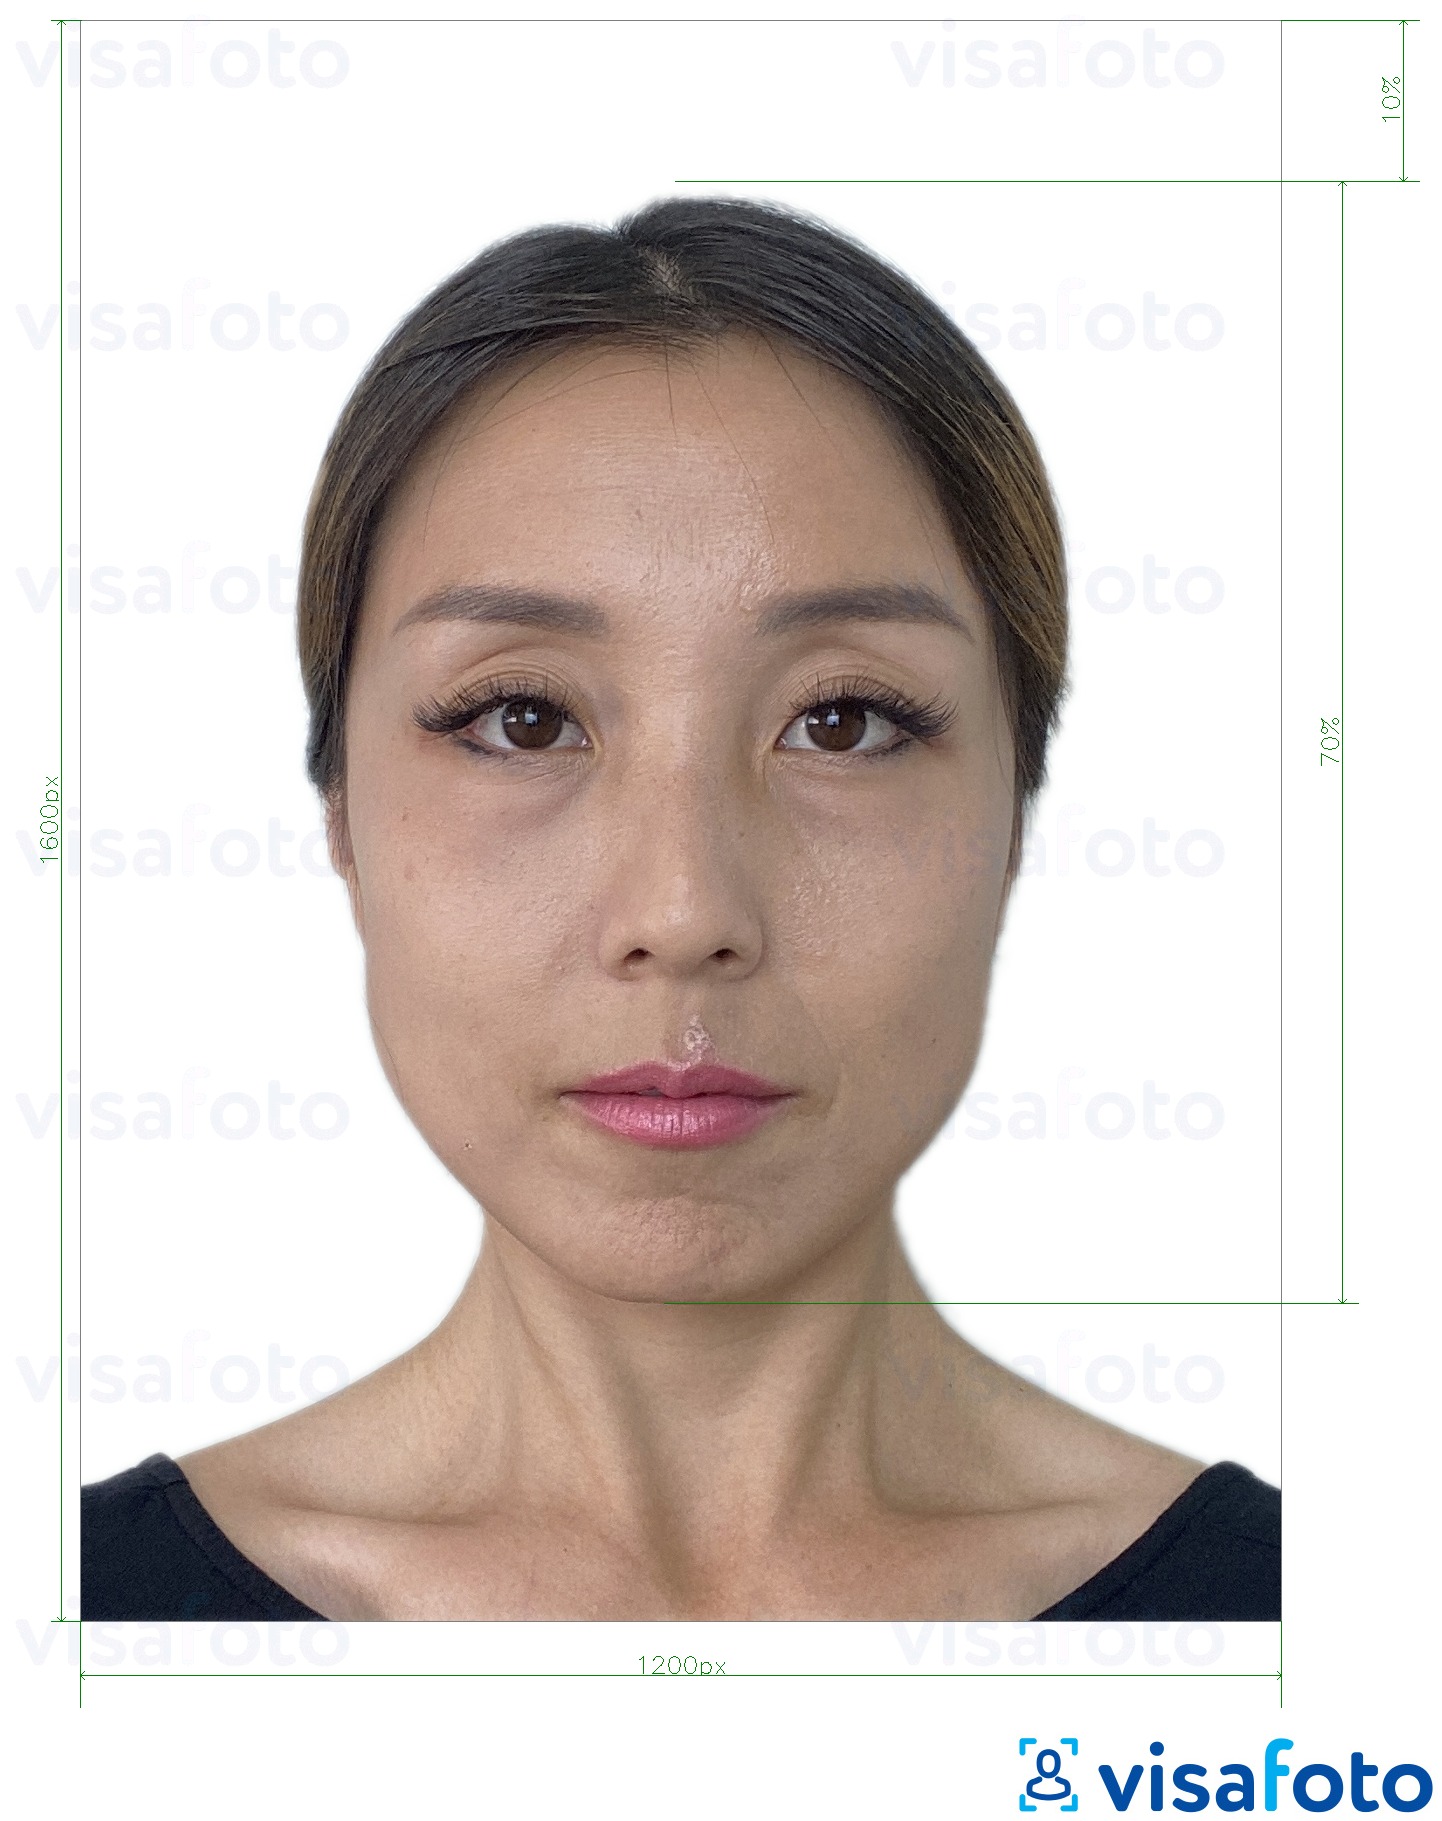 Exemples sur des photos pour E-visa en ligne de Hong Kong 1200x1600 pixels avec les spécifications de taille exactes